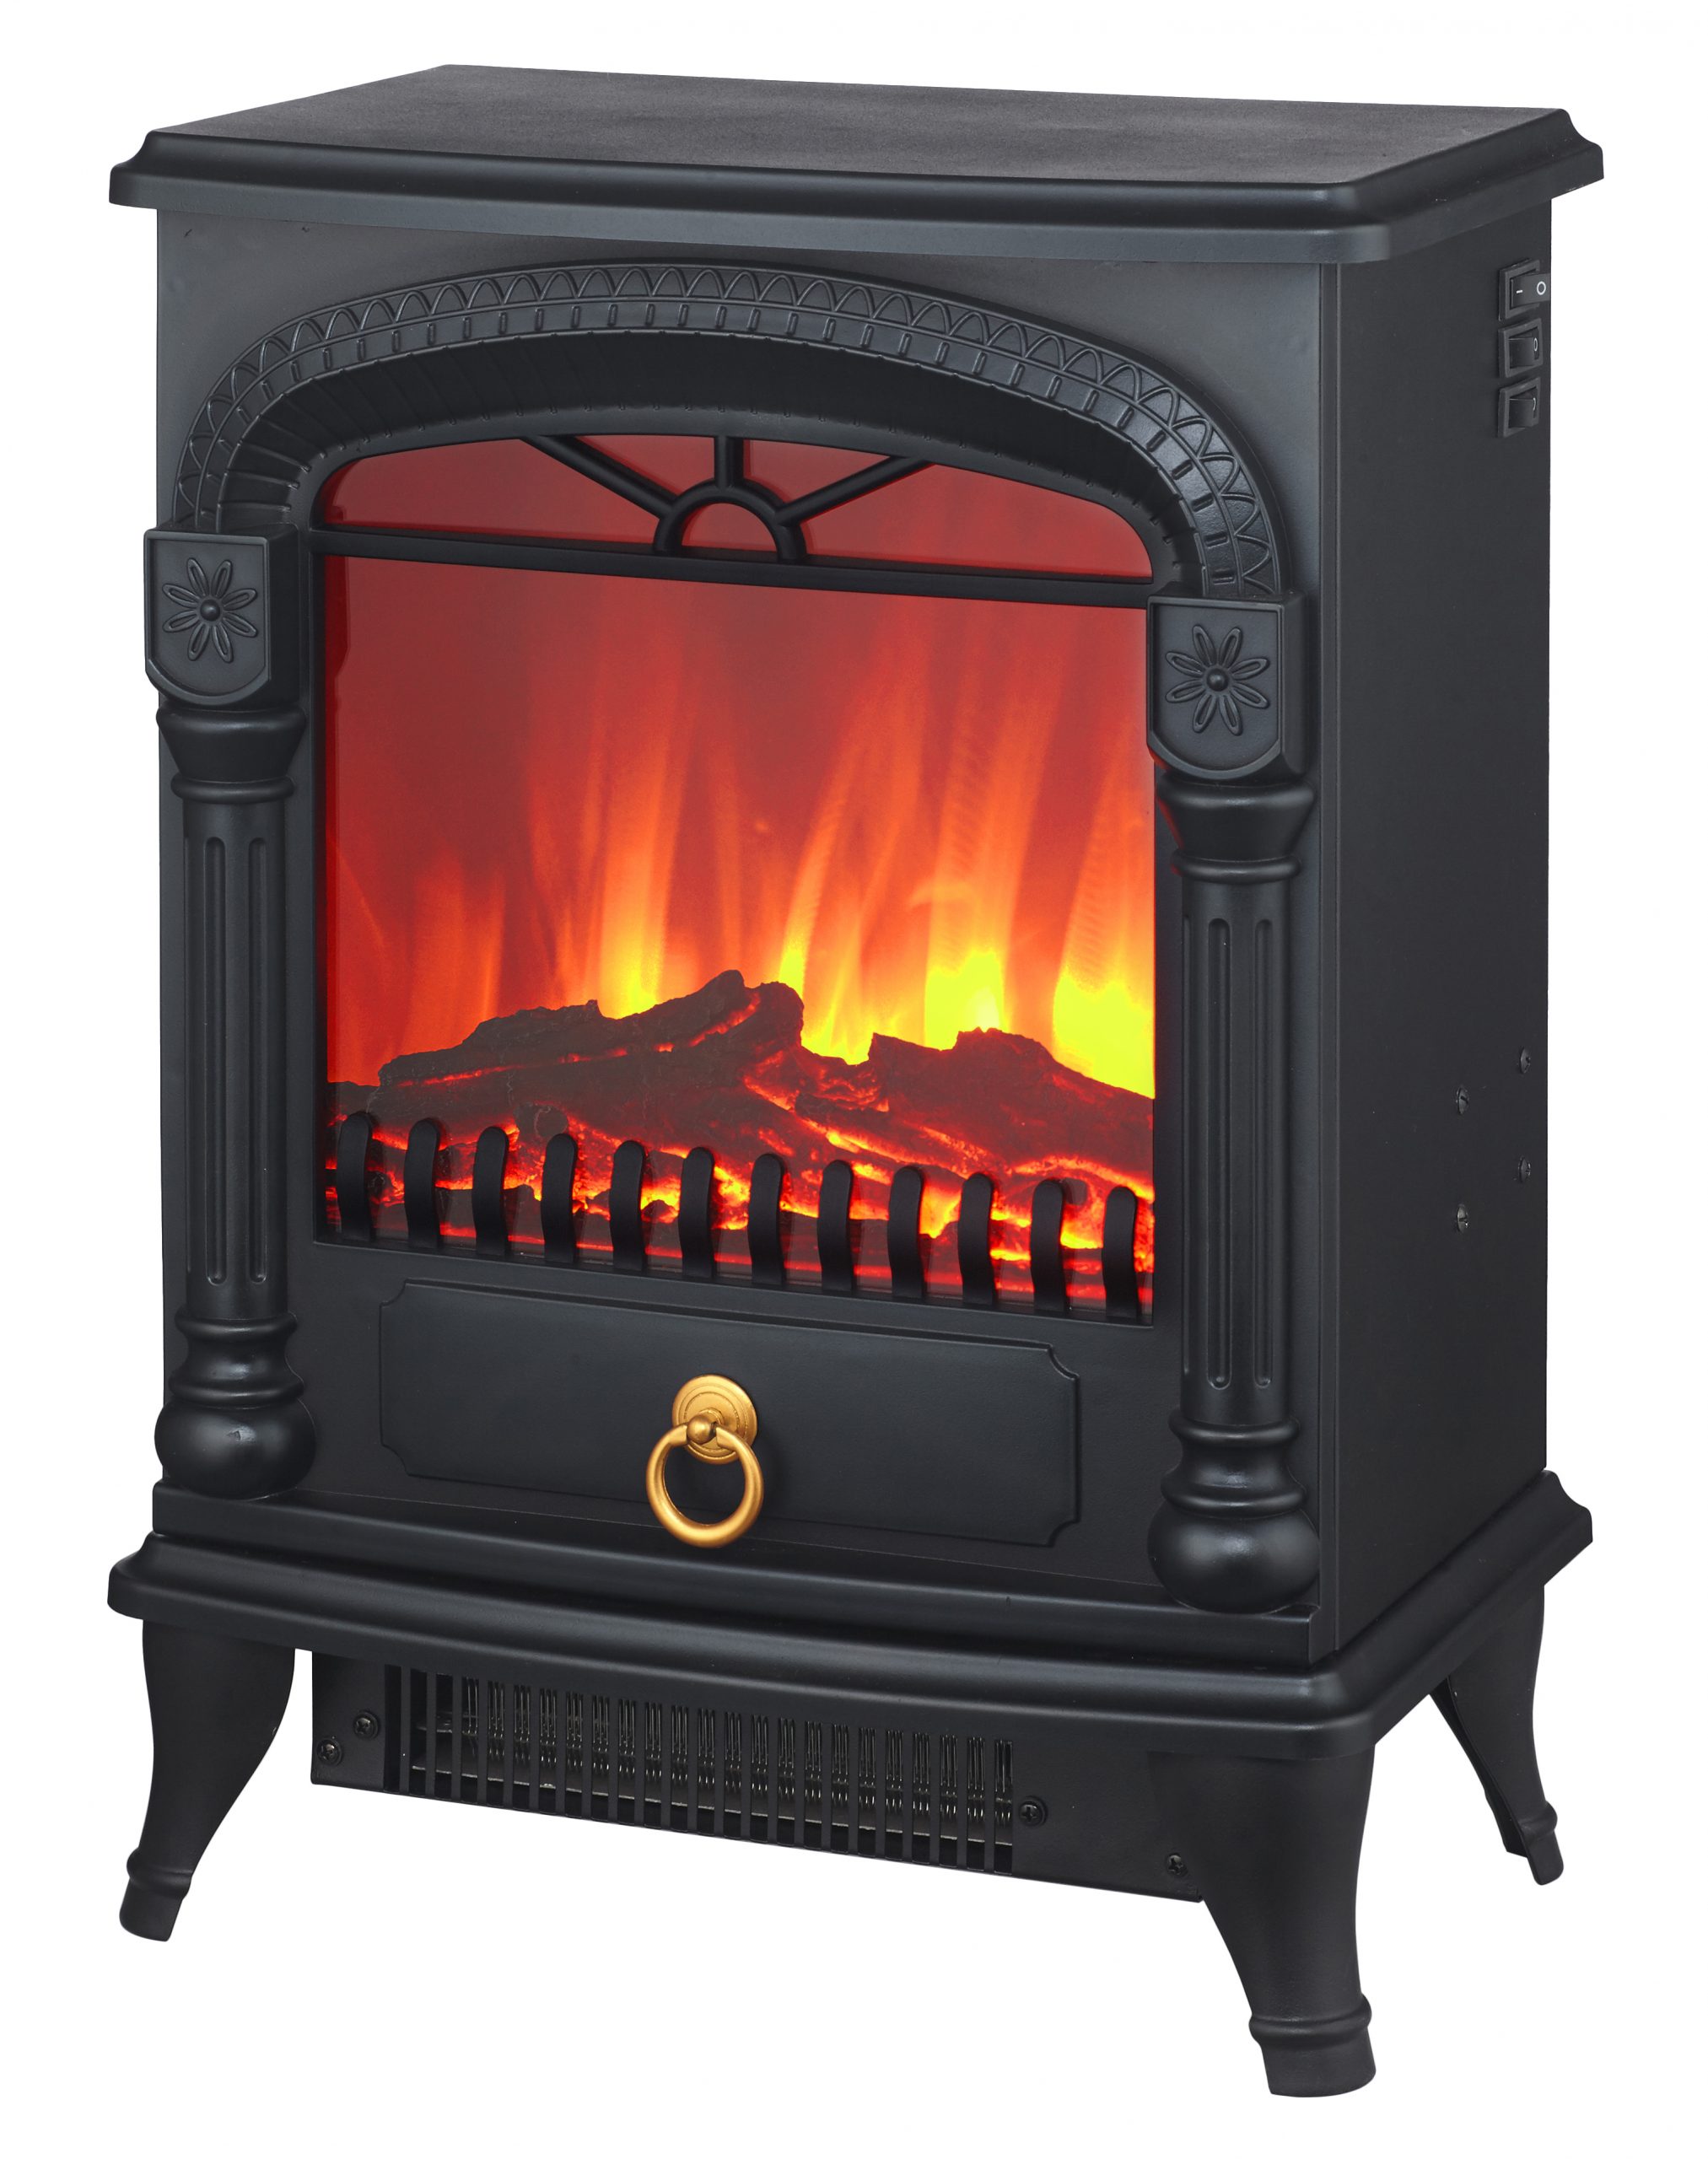 Wood Burning Fireplace Inserts Lowes Luxury China Electric Fireplace Insert Heater China Electric